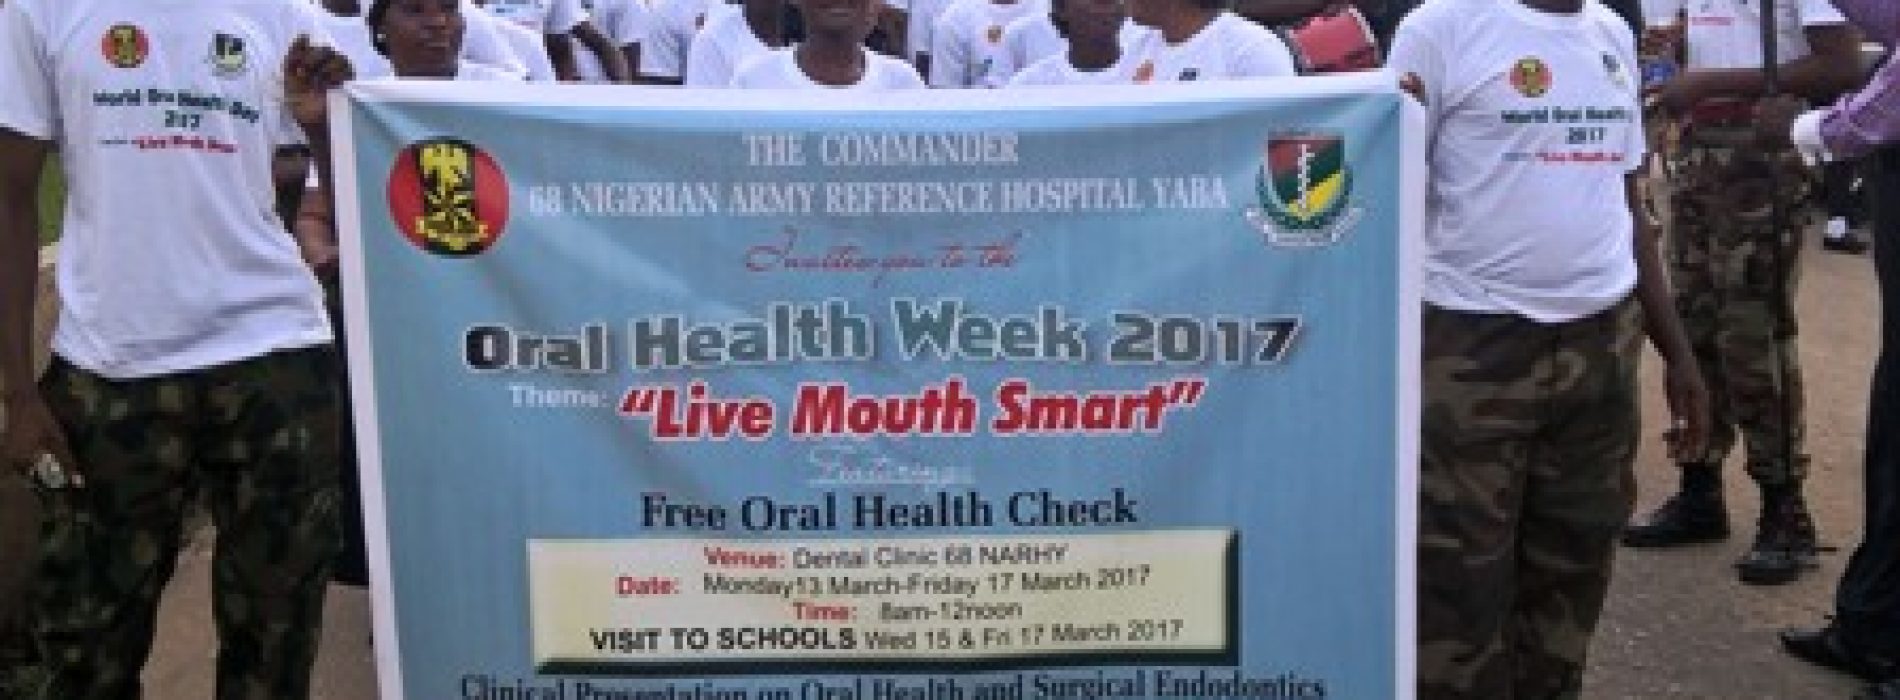 Army hospital walks for oral hygiene